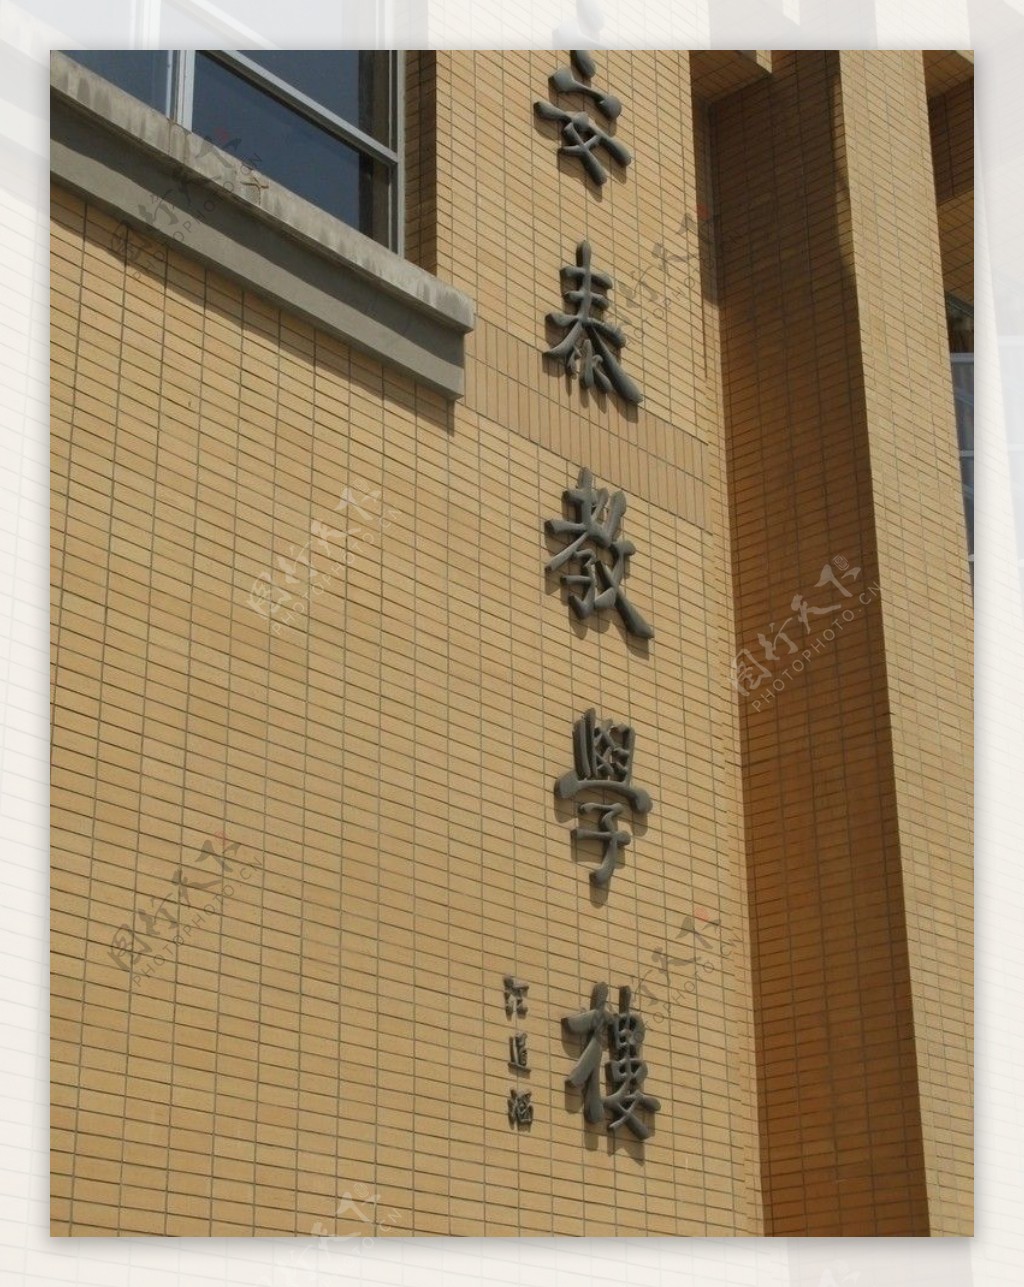 上海交通大学教学楼图片